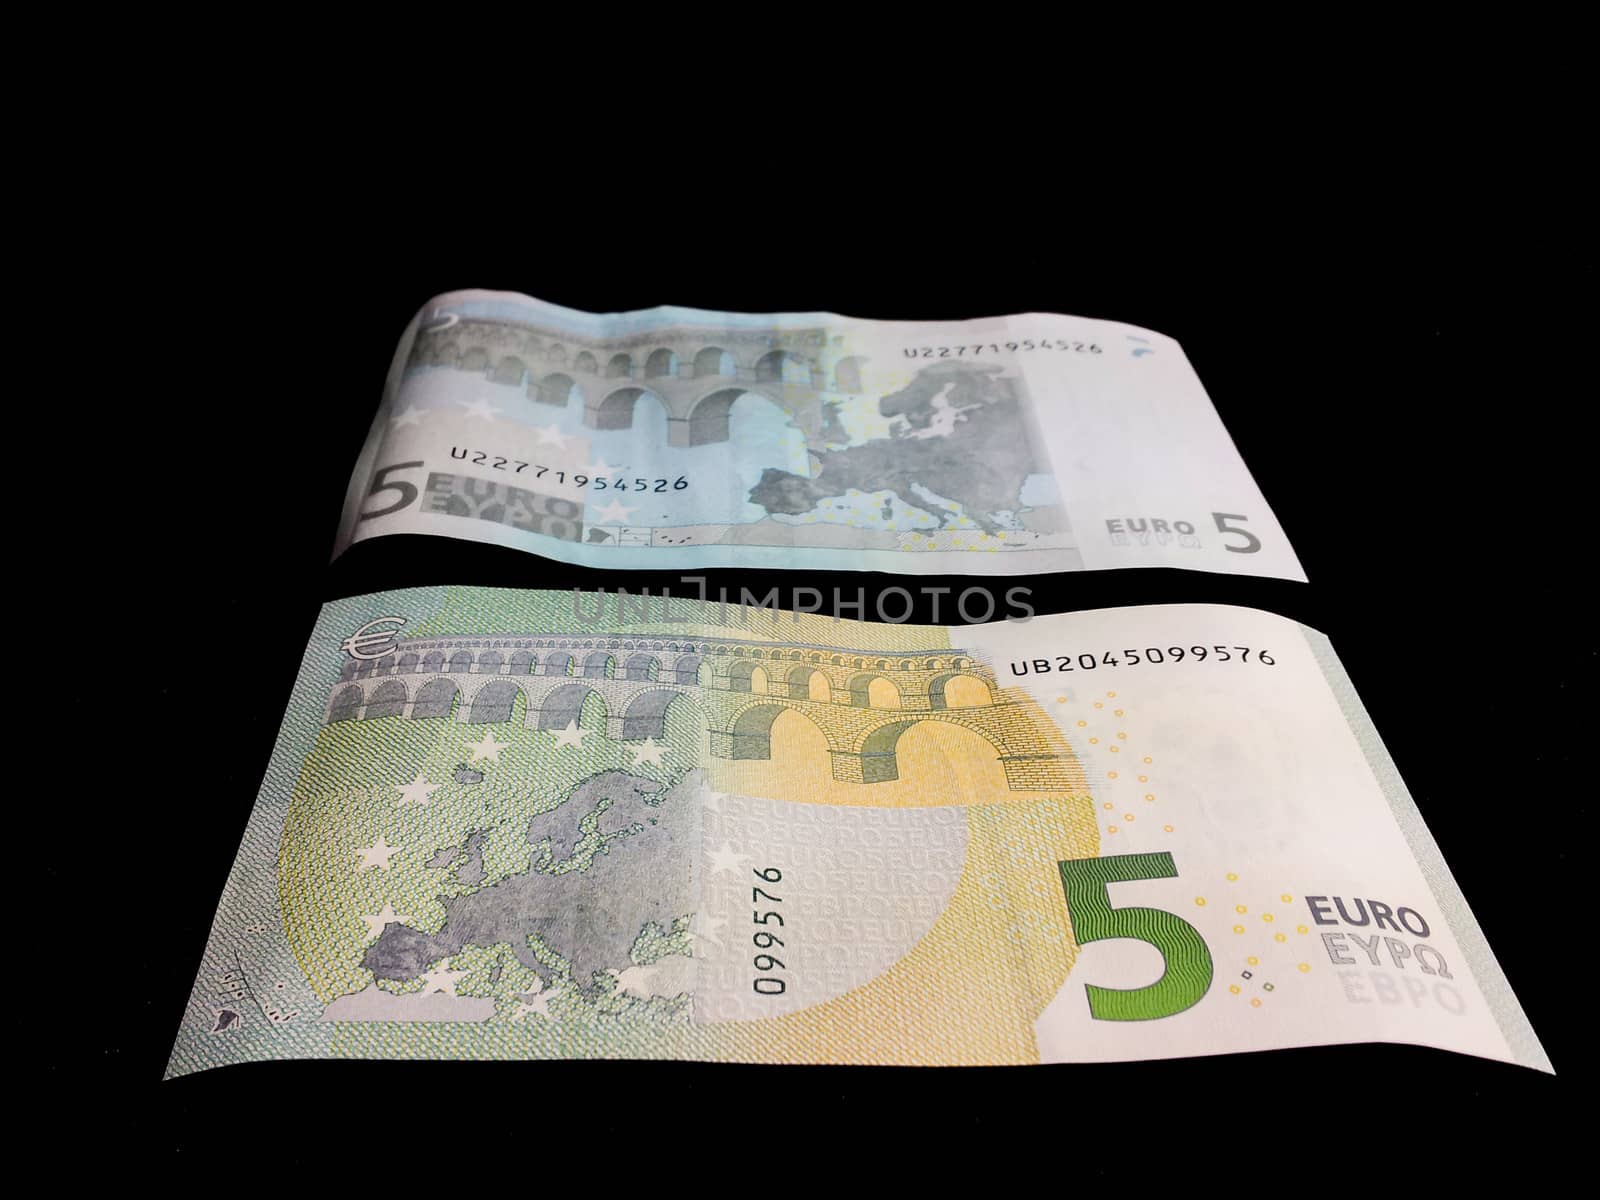 Five Euro bills by Arvebettum